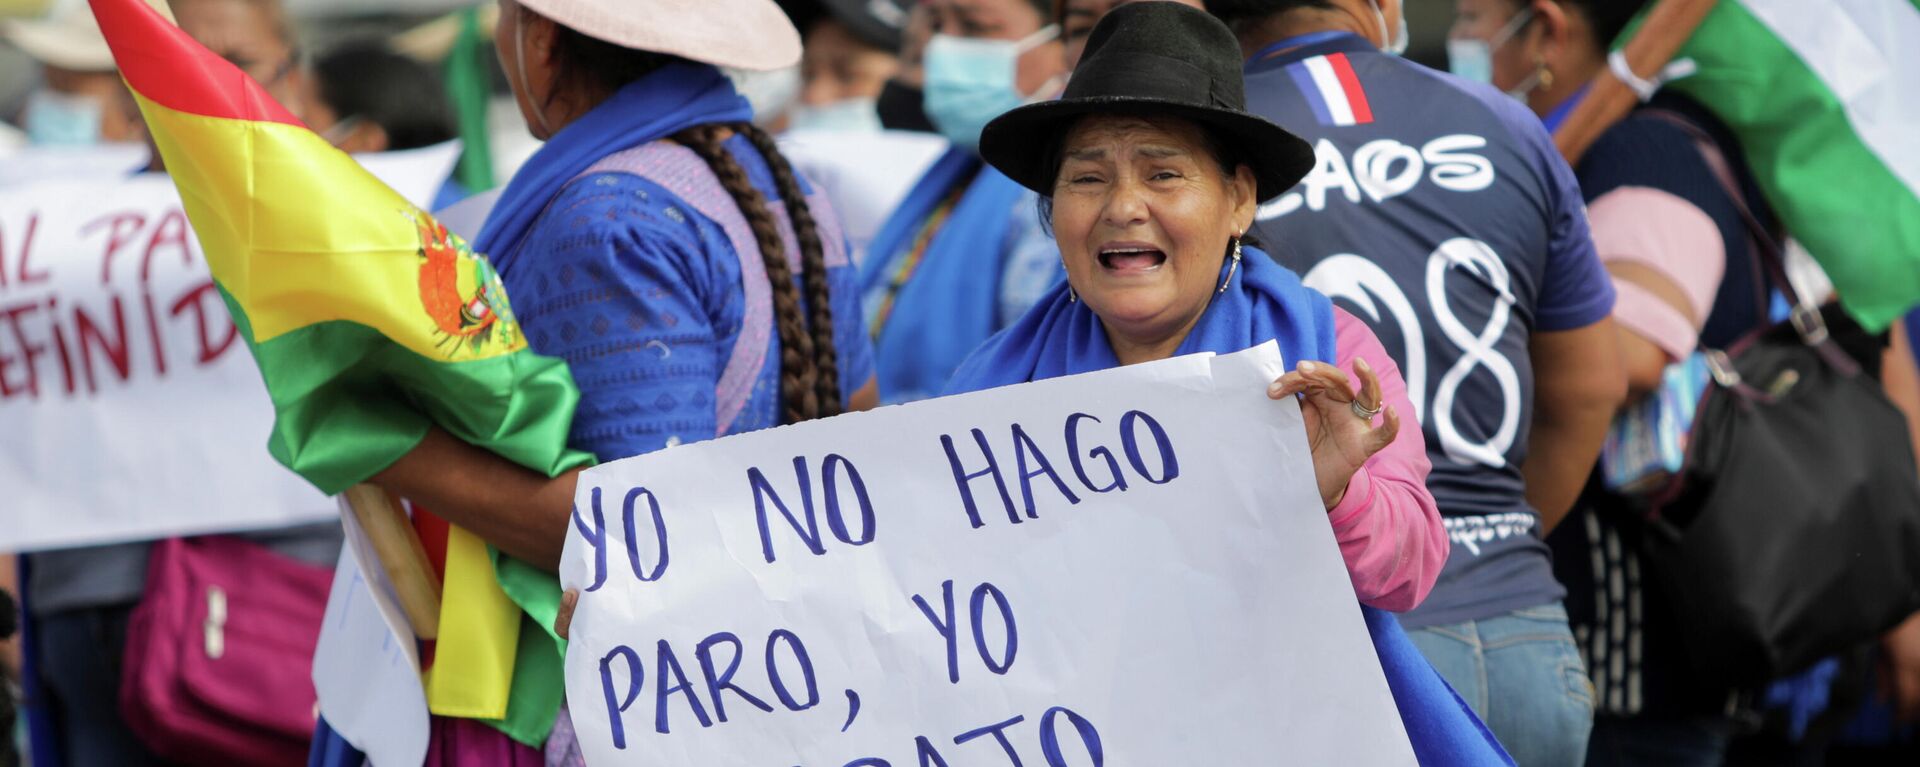 Una partidaria del presidente boliviano Luis Arce sostiene un cartel que dice No paro, trabajo, mientras aumentan las tensiones políticas en el país debido al paro indefinido convocado por la oposición - Sputnik Mundo, 1920, 12.11.2021